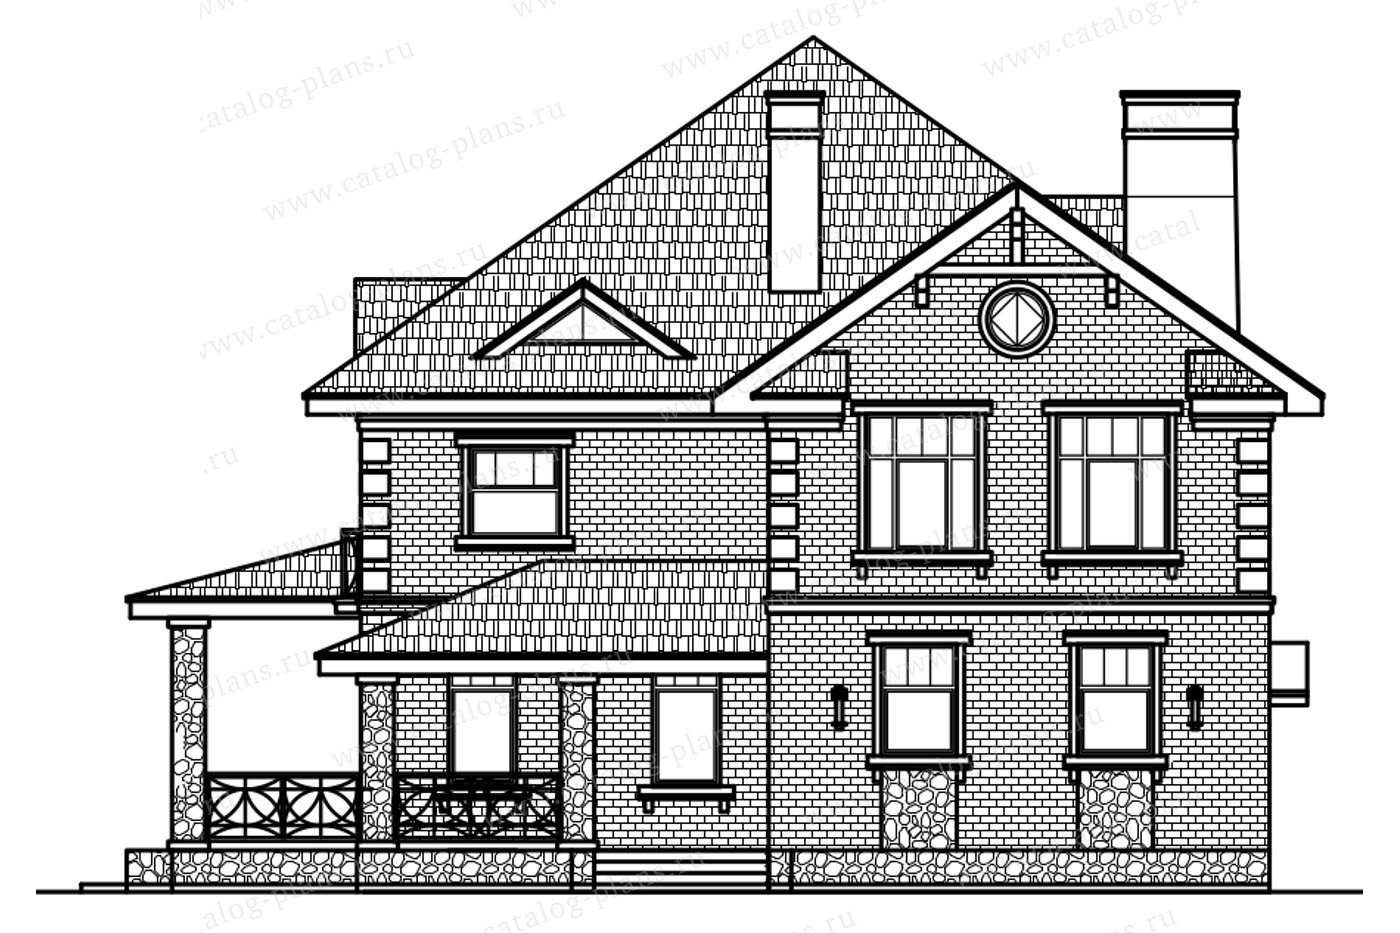 Проект 57-33D, жилой дом, материал - газобетонные блоки 400, количество этажей - 2, архитектурный стиль - американский, фундамент - монолитная ж/б плита